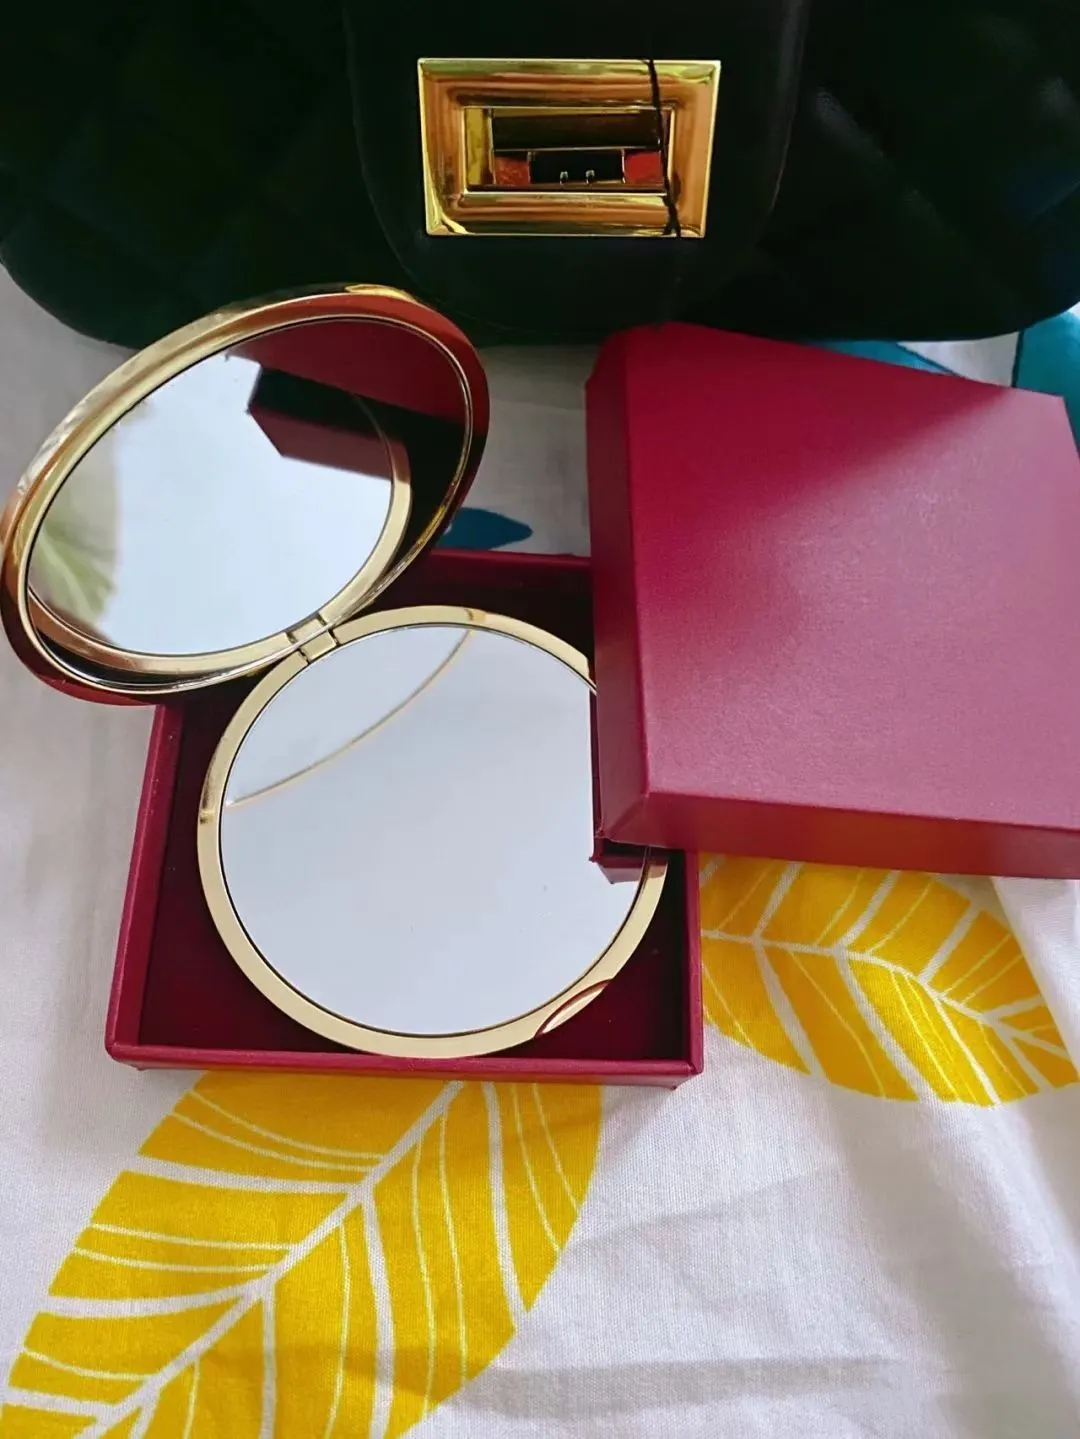 Luxuriöser goldfarbener Reise-Make-up-Spiegel, kompakt, Edelstahl, Metall, Taschen-Kosmetikspiegel, 2-seitiger tragbarer Klappspiegel für Frauen, Geschenk